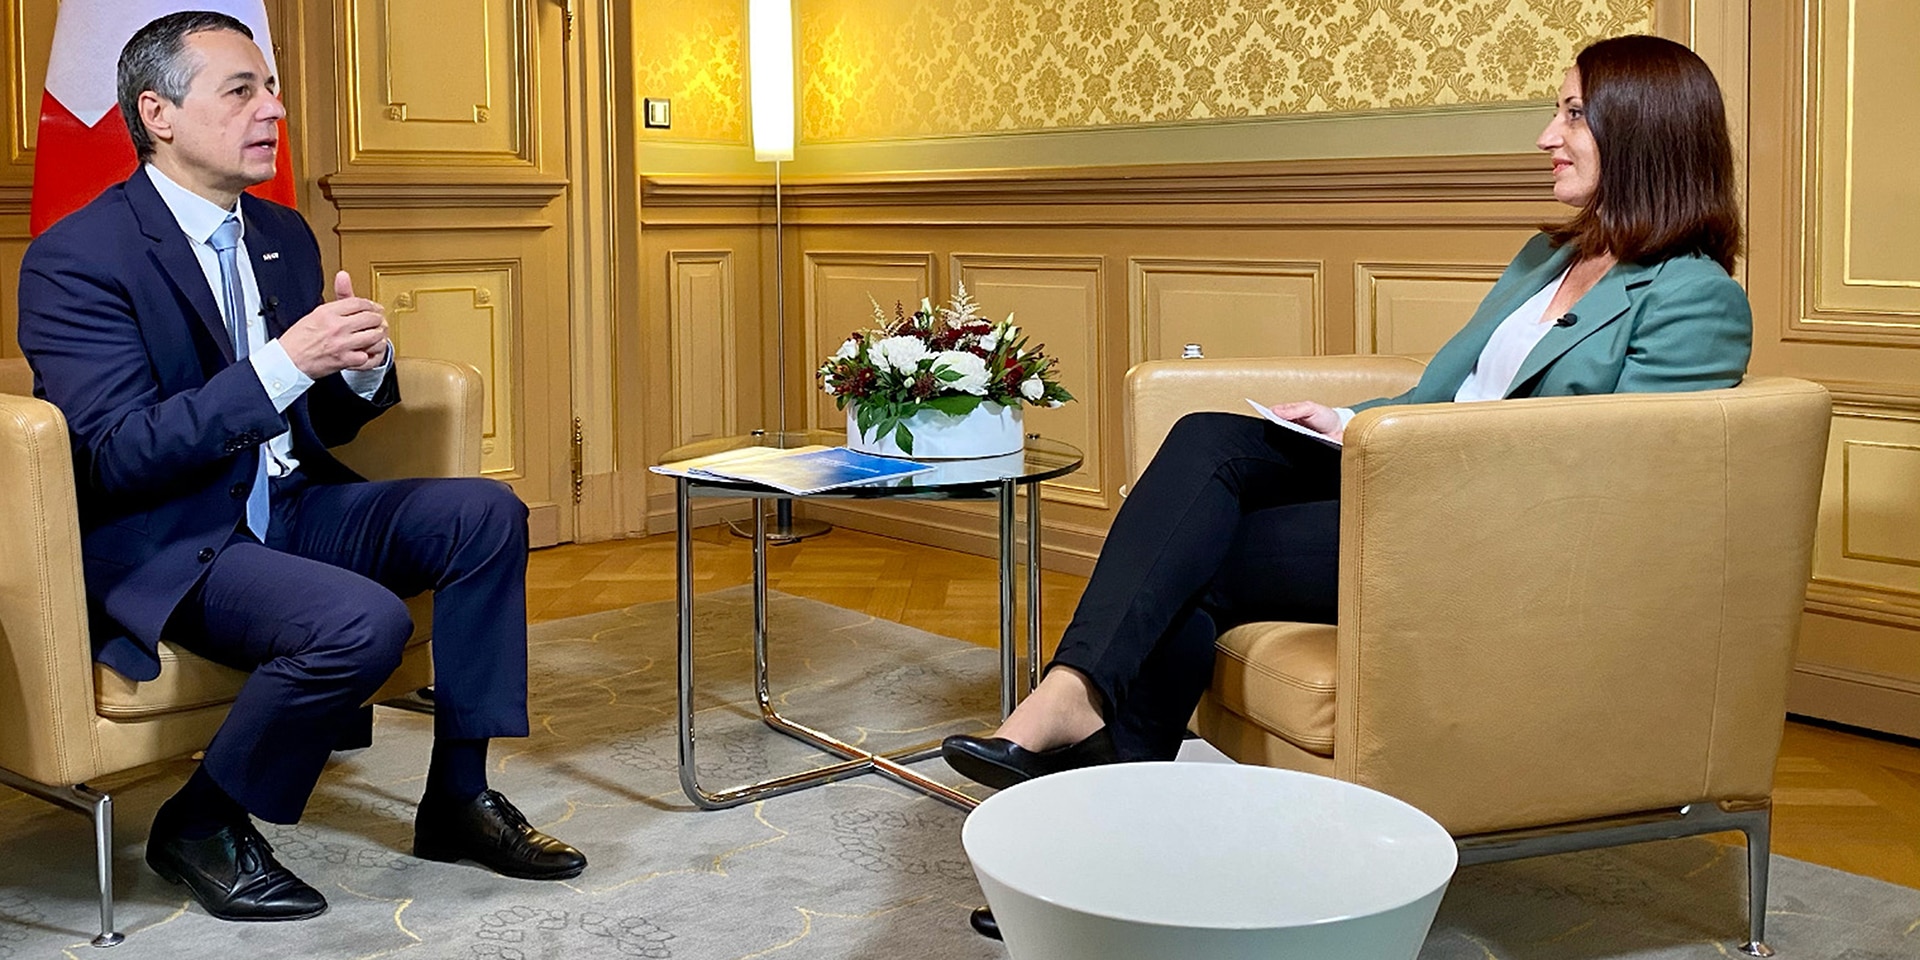  Il consigliere federale Ignazio Cassis, seduto su una sedia, parla con la moderatrice durante un’intervista.